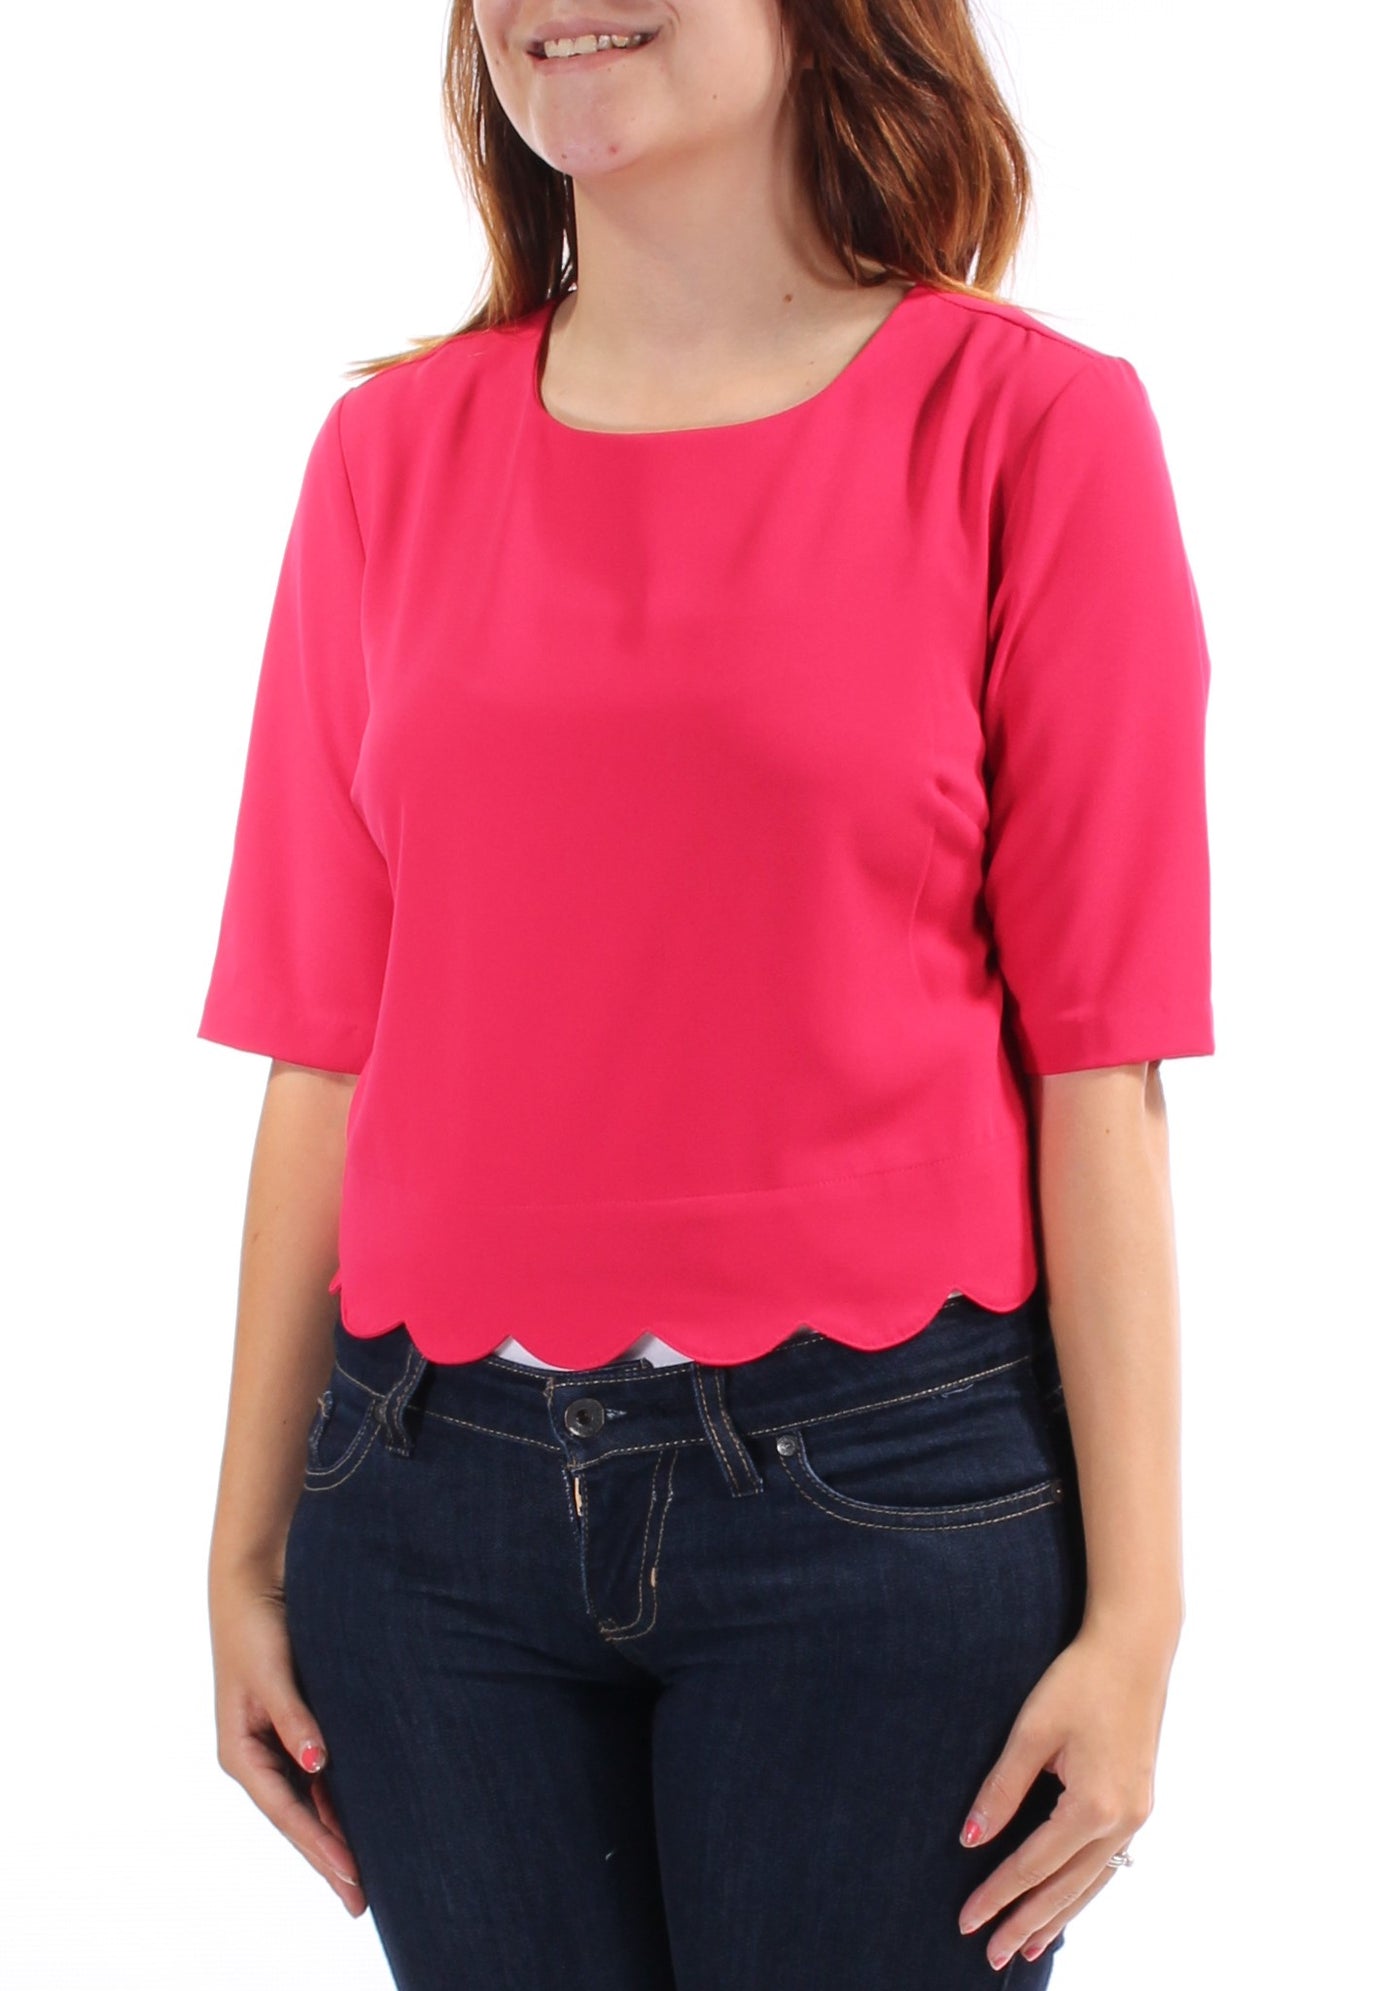 MAISON JULES Womens Pink Short Sleeve Jewel Neck Top